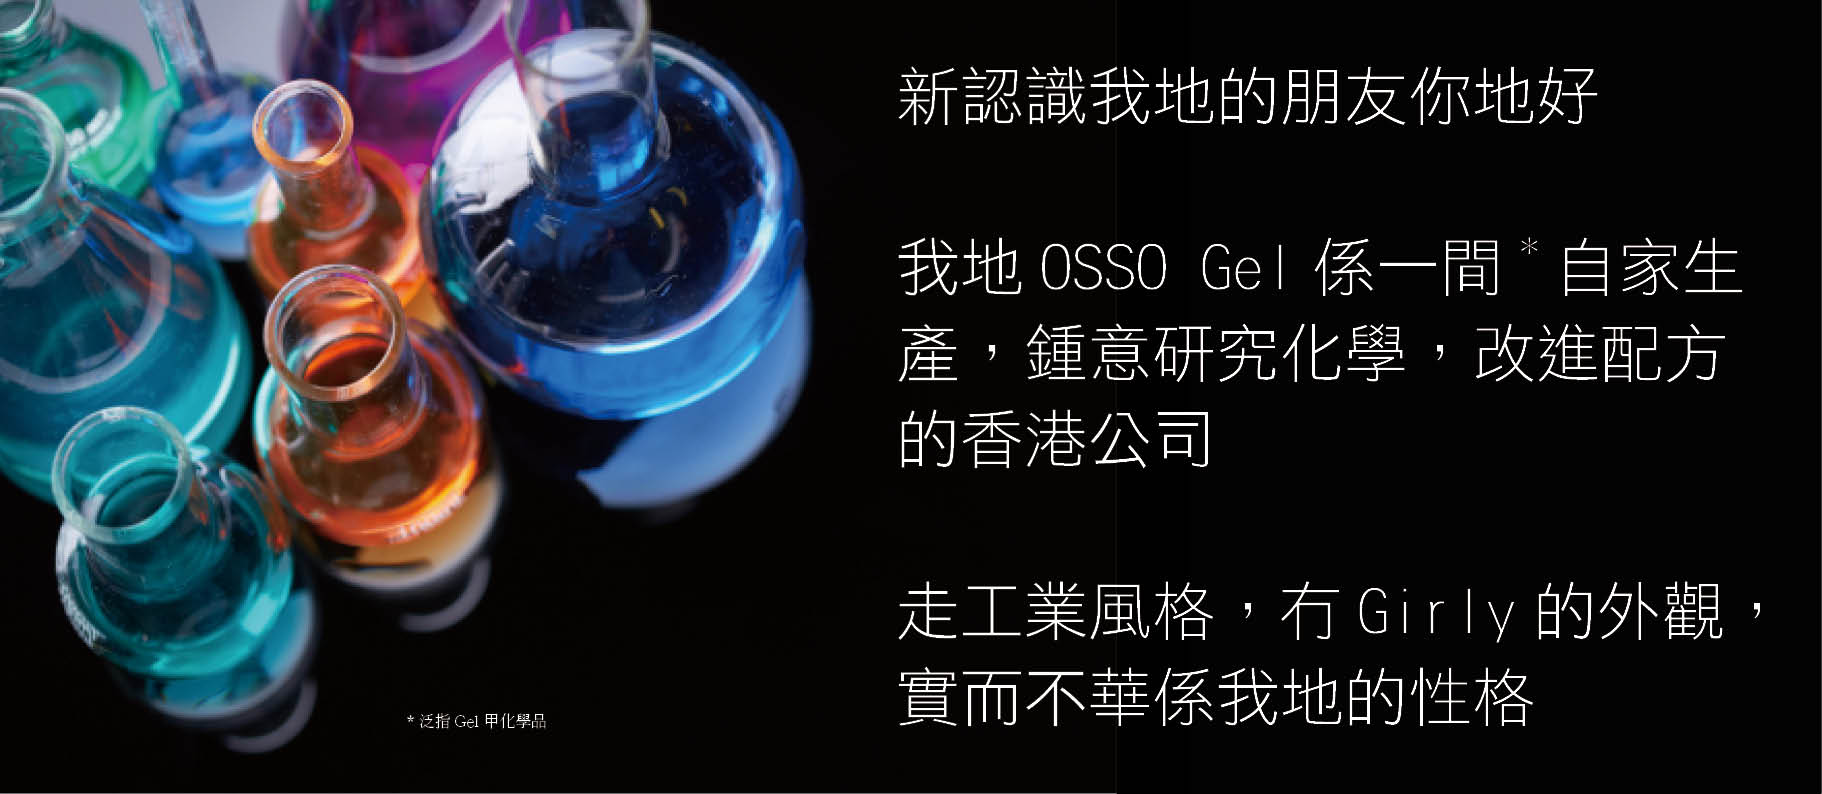 新認識我地的朋友你地好 我地OSSO Gel係一間*自家生產，鍾意研究化學，改進配方的香港公司 走工業風格，冇Girly的外觀，實而不華係我地的性格